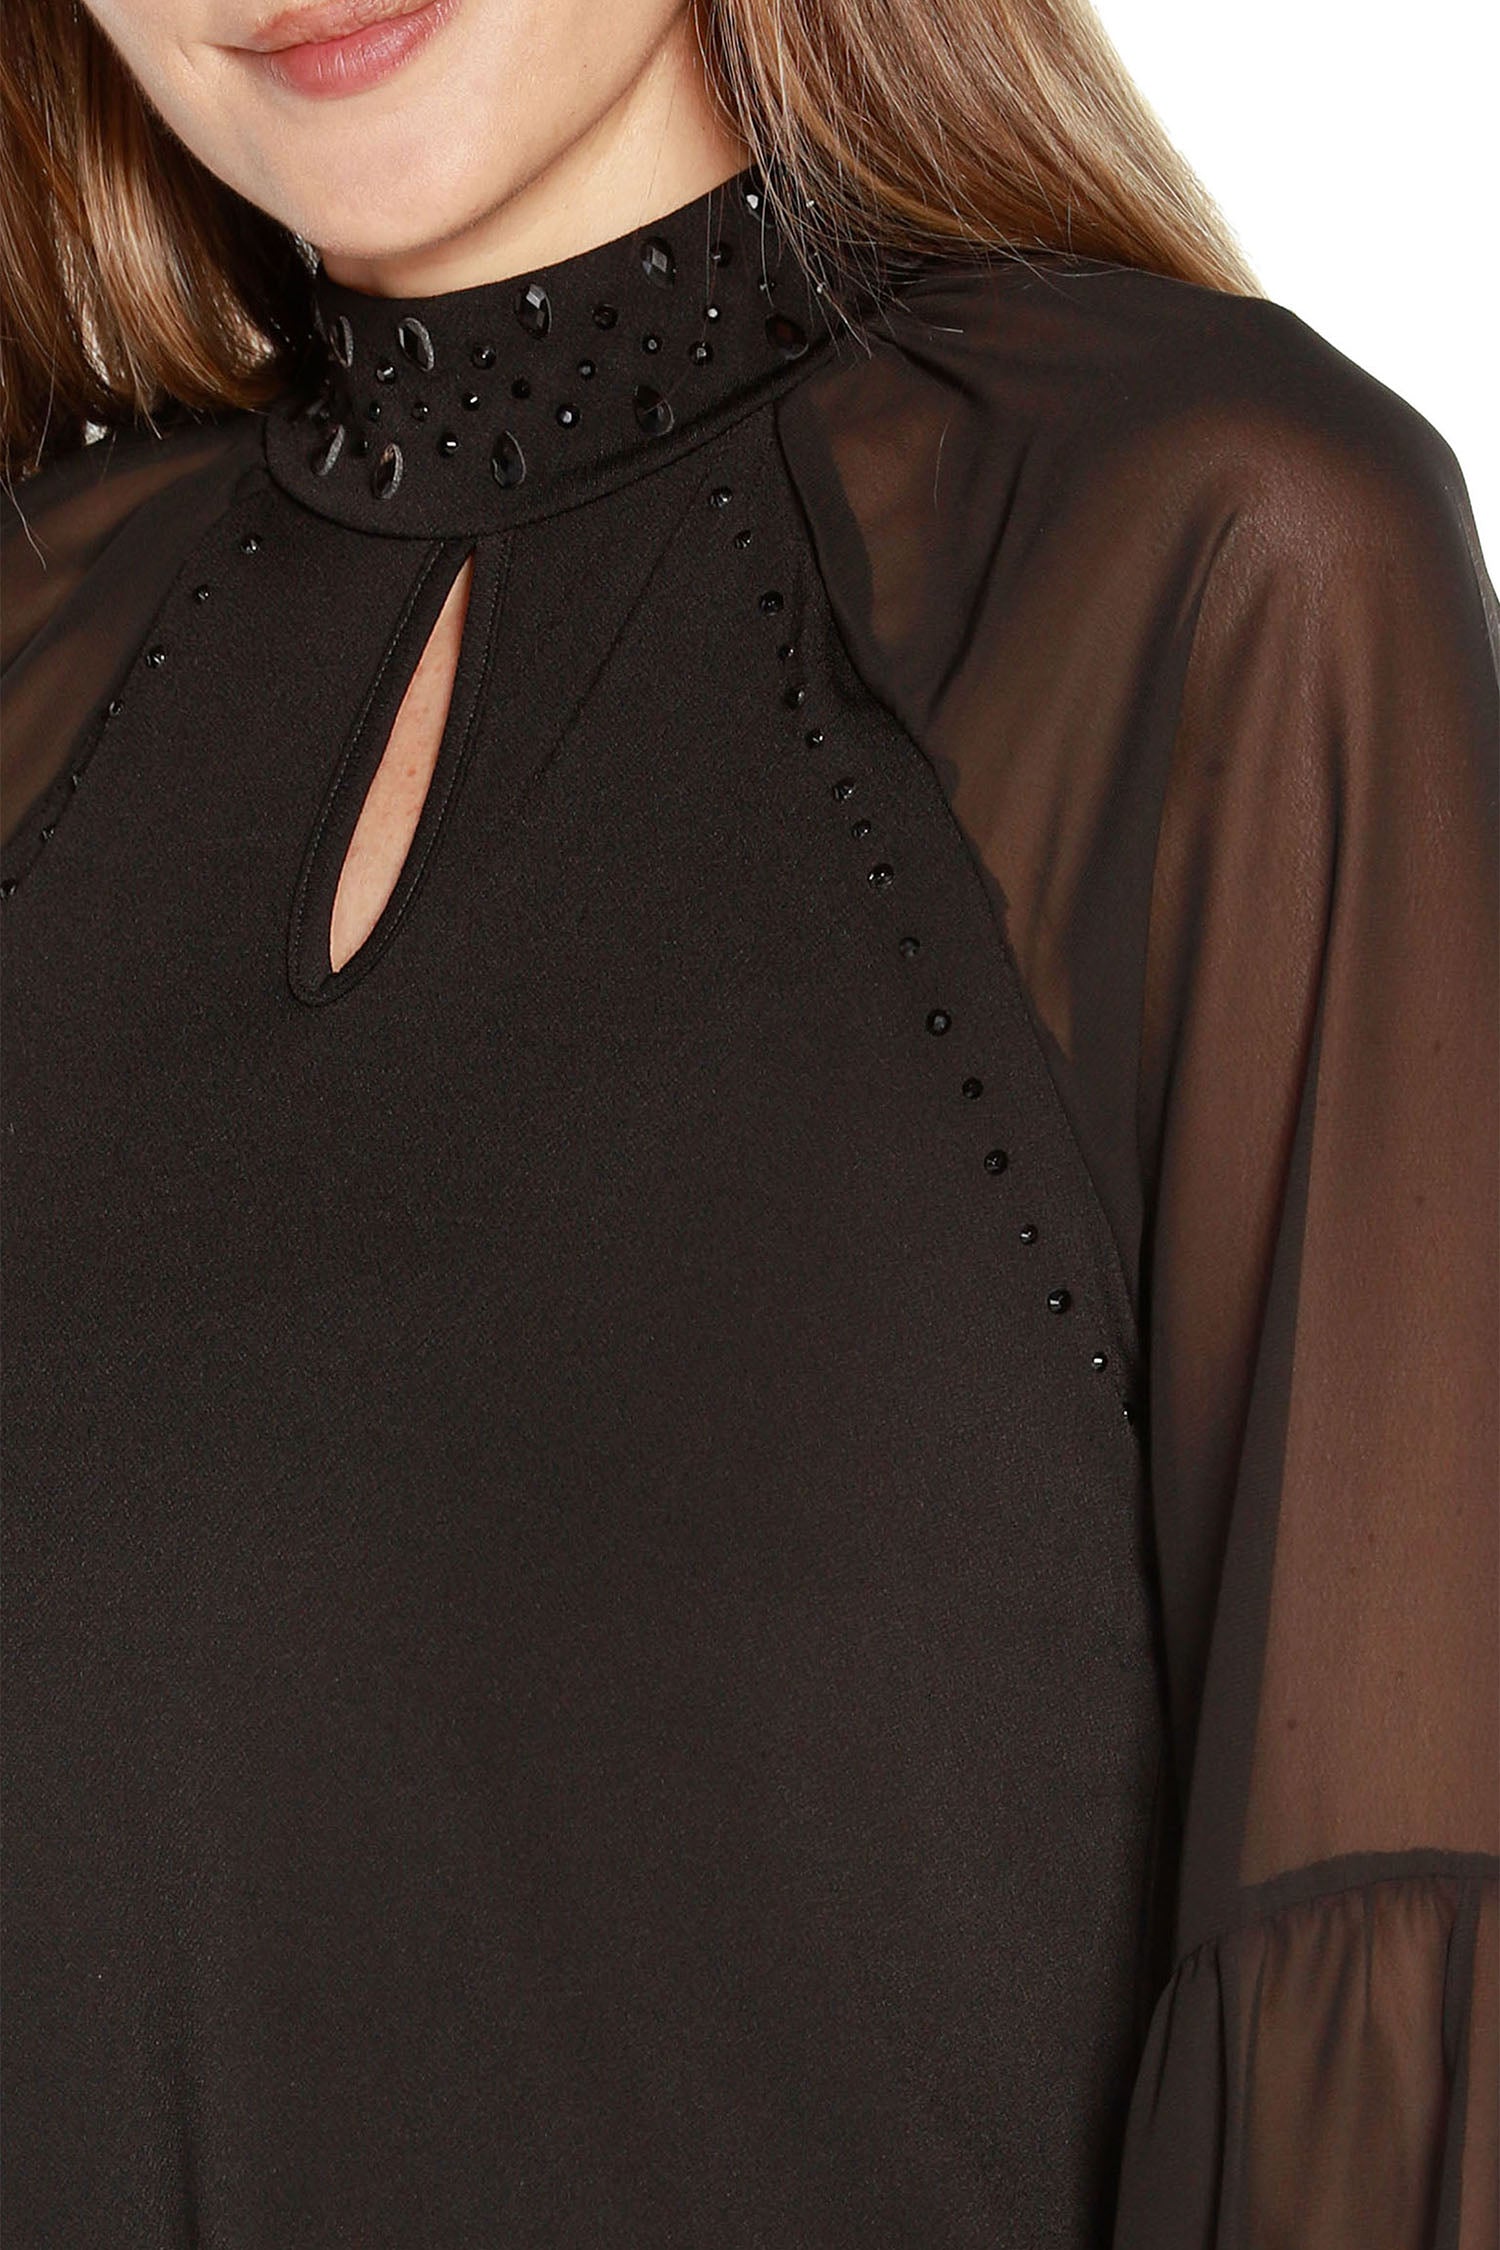 Túnica tipo jersey para mujer con mangas largas transparentes, cuello simulado y abertura frontal